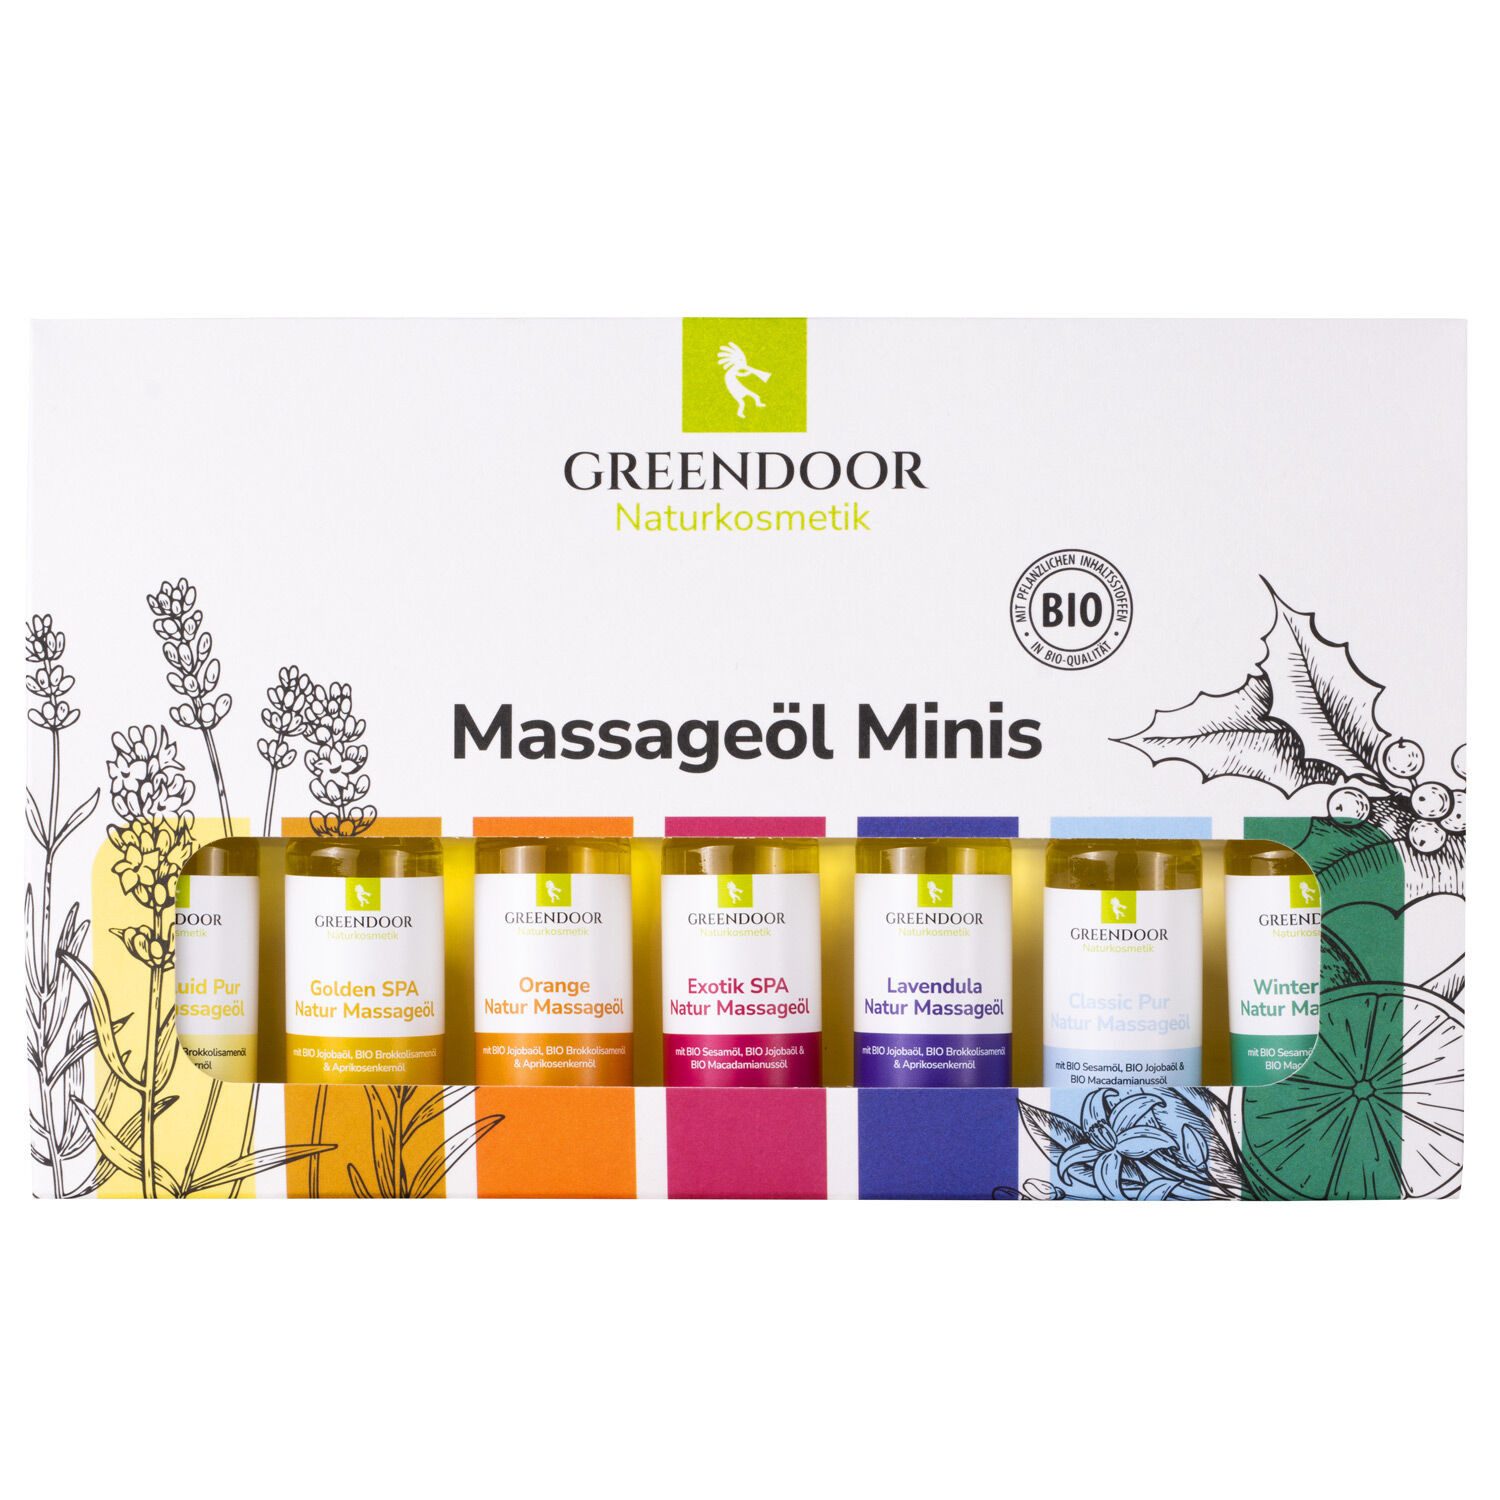 GREENDOOR Massageöl Massageöl Меню als Minis